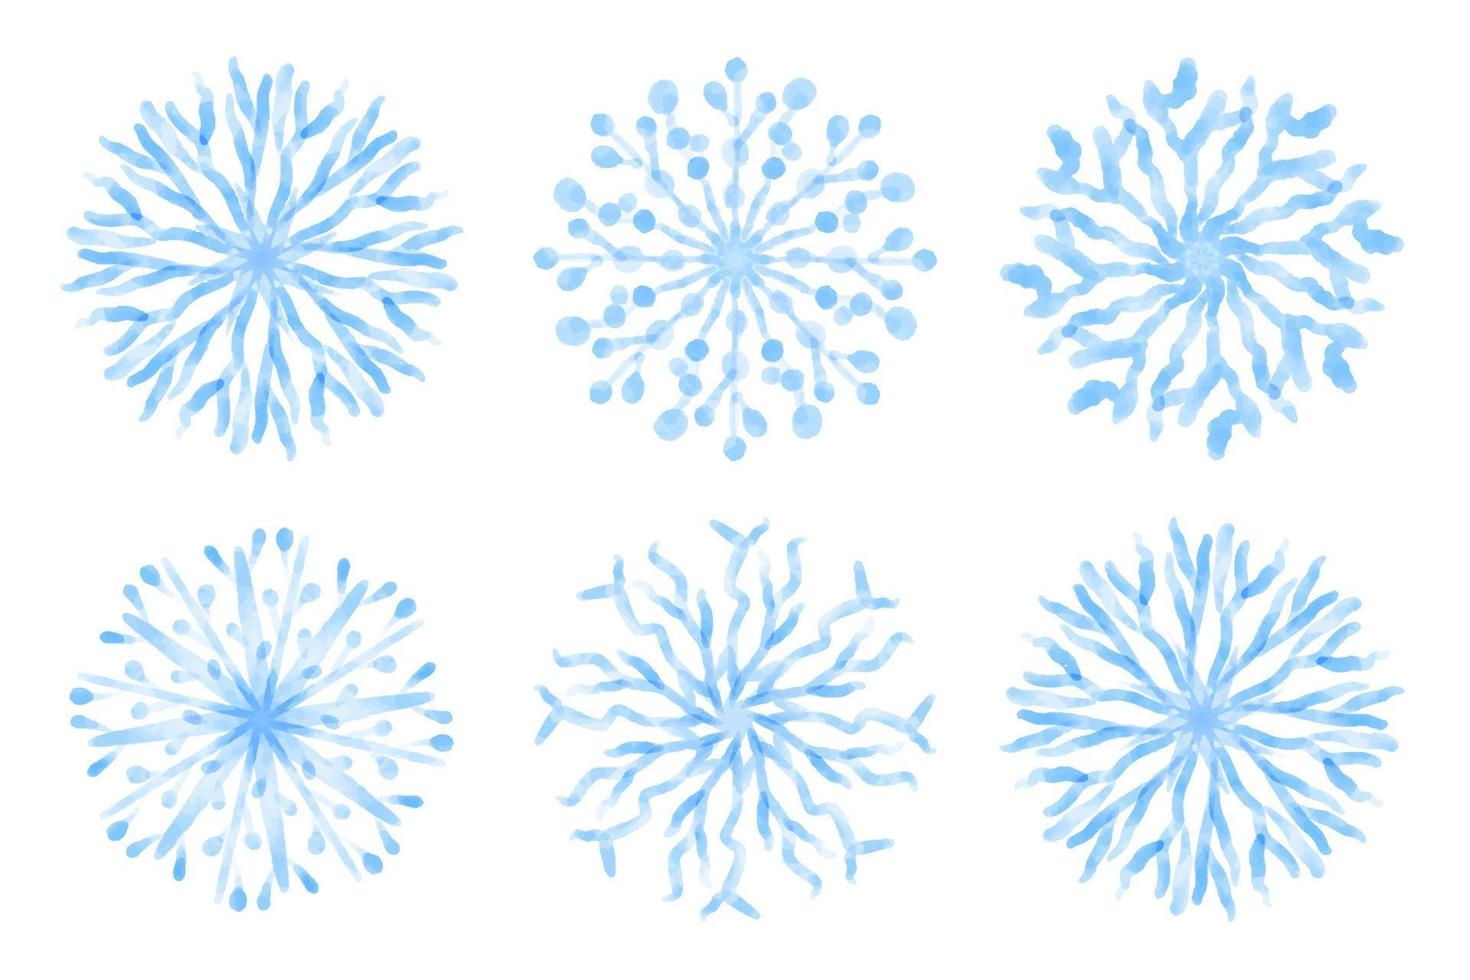 coleção de flocos de neve azuis artísticos com textura aquarela. conjunto de vetores de estoque. pode ser usado para materiais impressos, estampas, cartazes, cartões, logotipo. abstrato. elementos decorativos desenhados à mão.